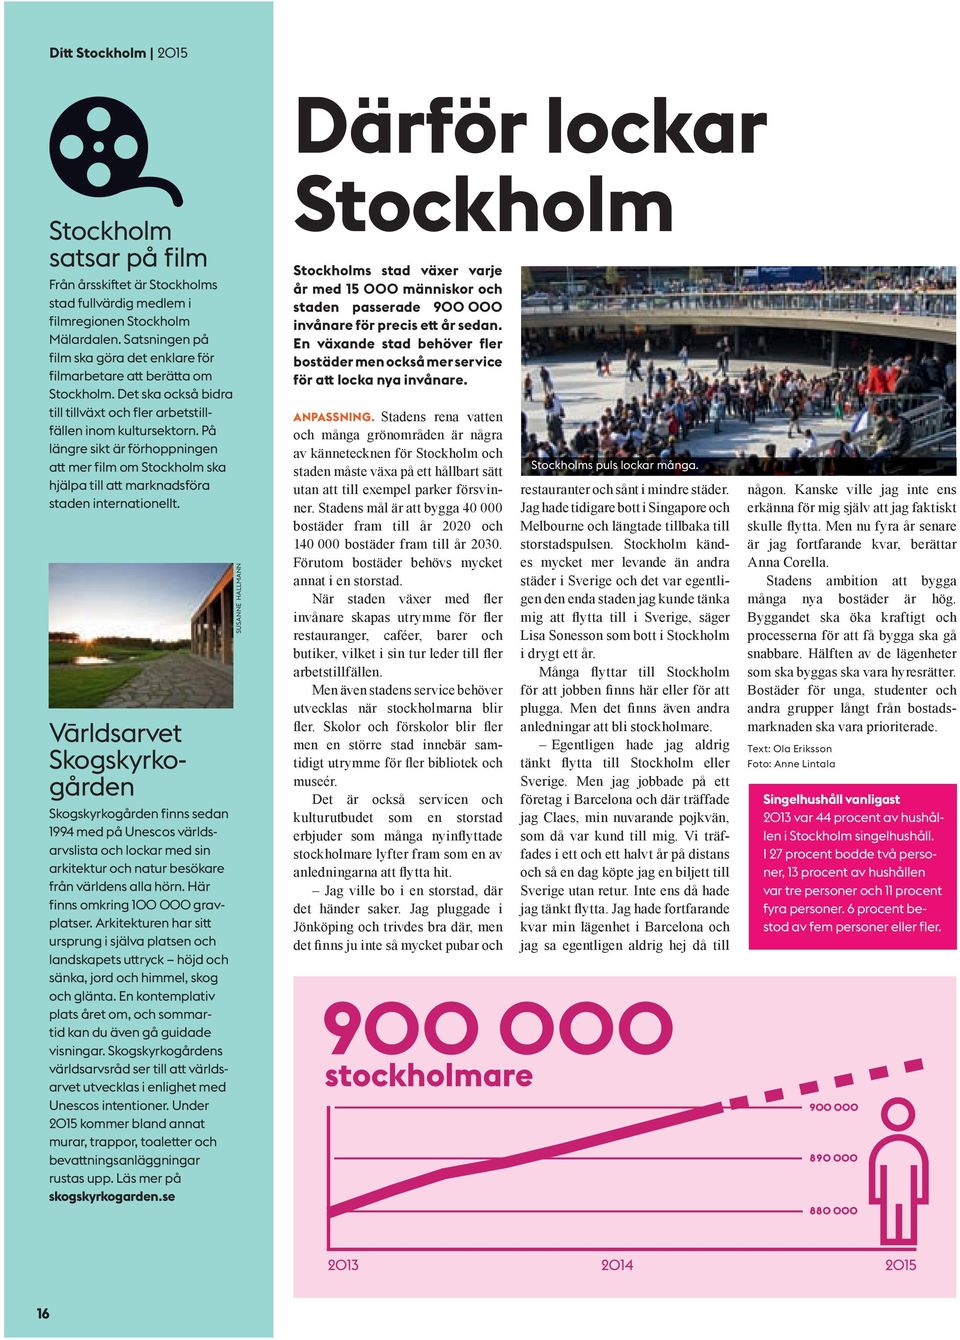 På längre sikt är förhoppningen att mer film om Stockholm ska hjälpa till att marknadsföra staden internationellt.